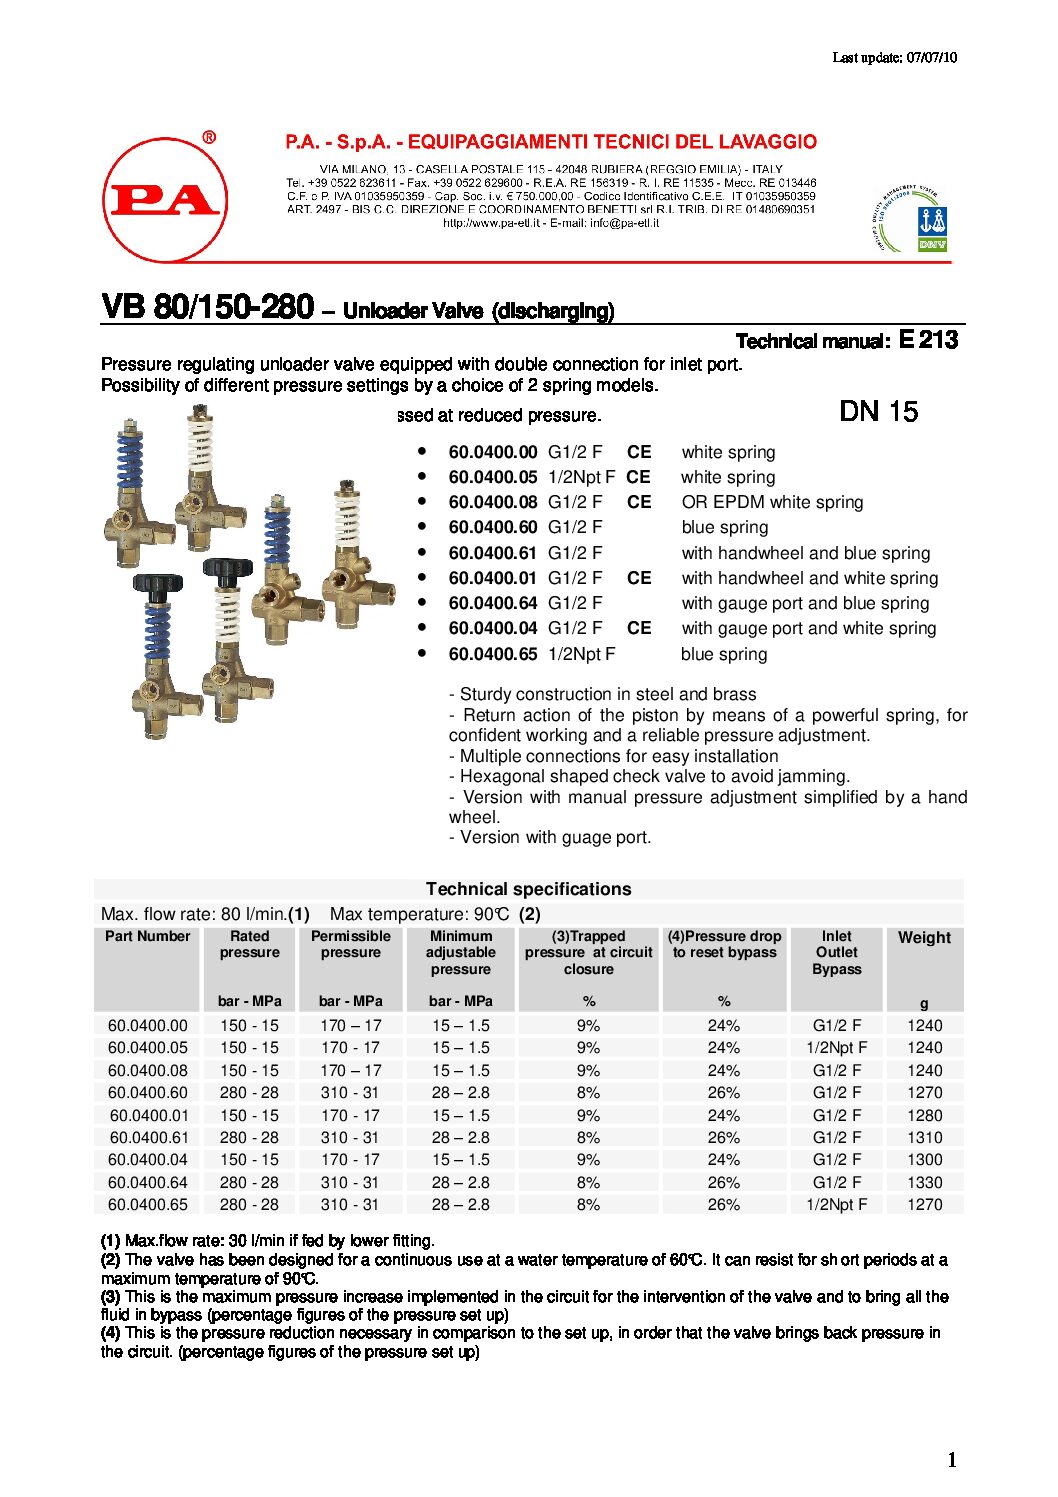 PA VB80/150 Unloader technical manual